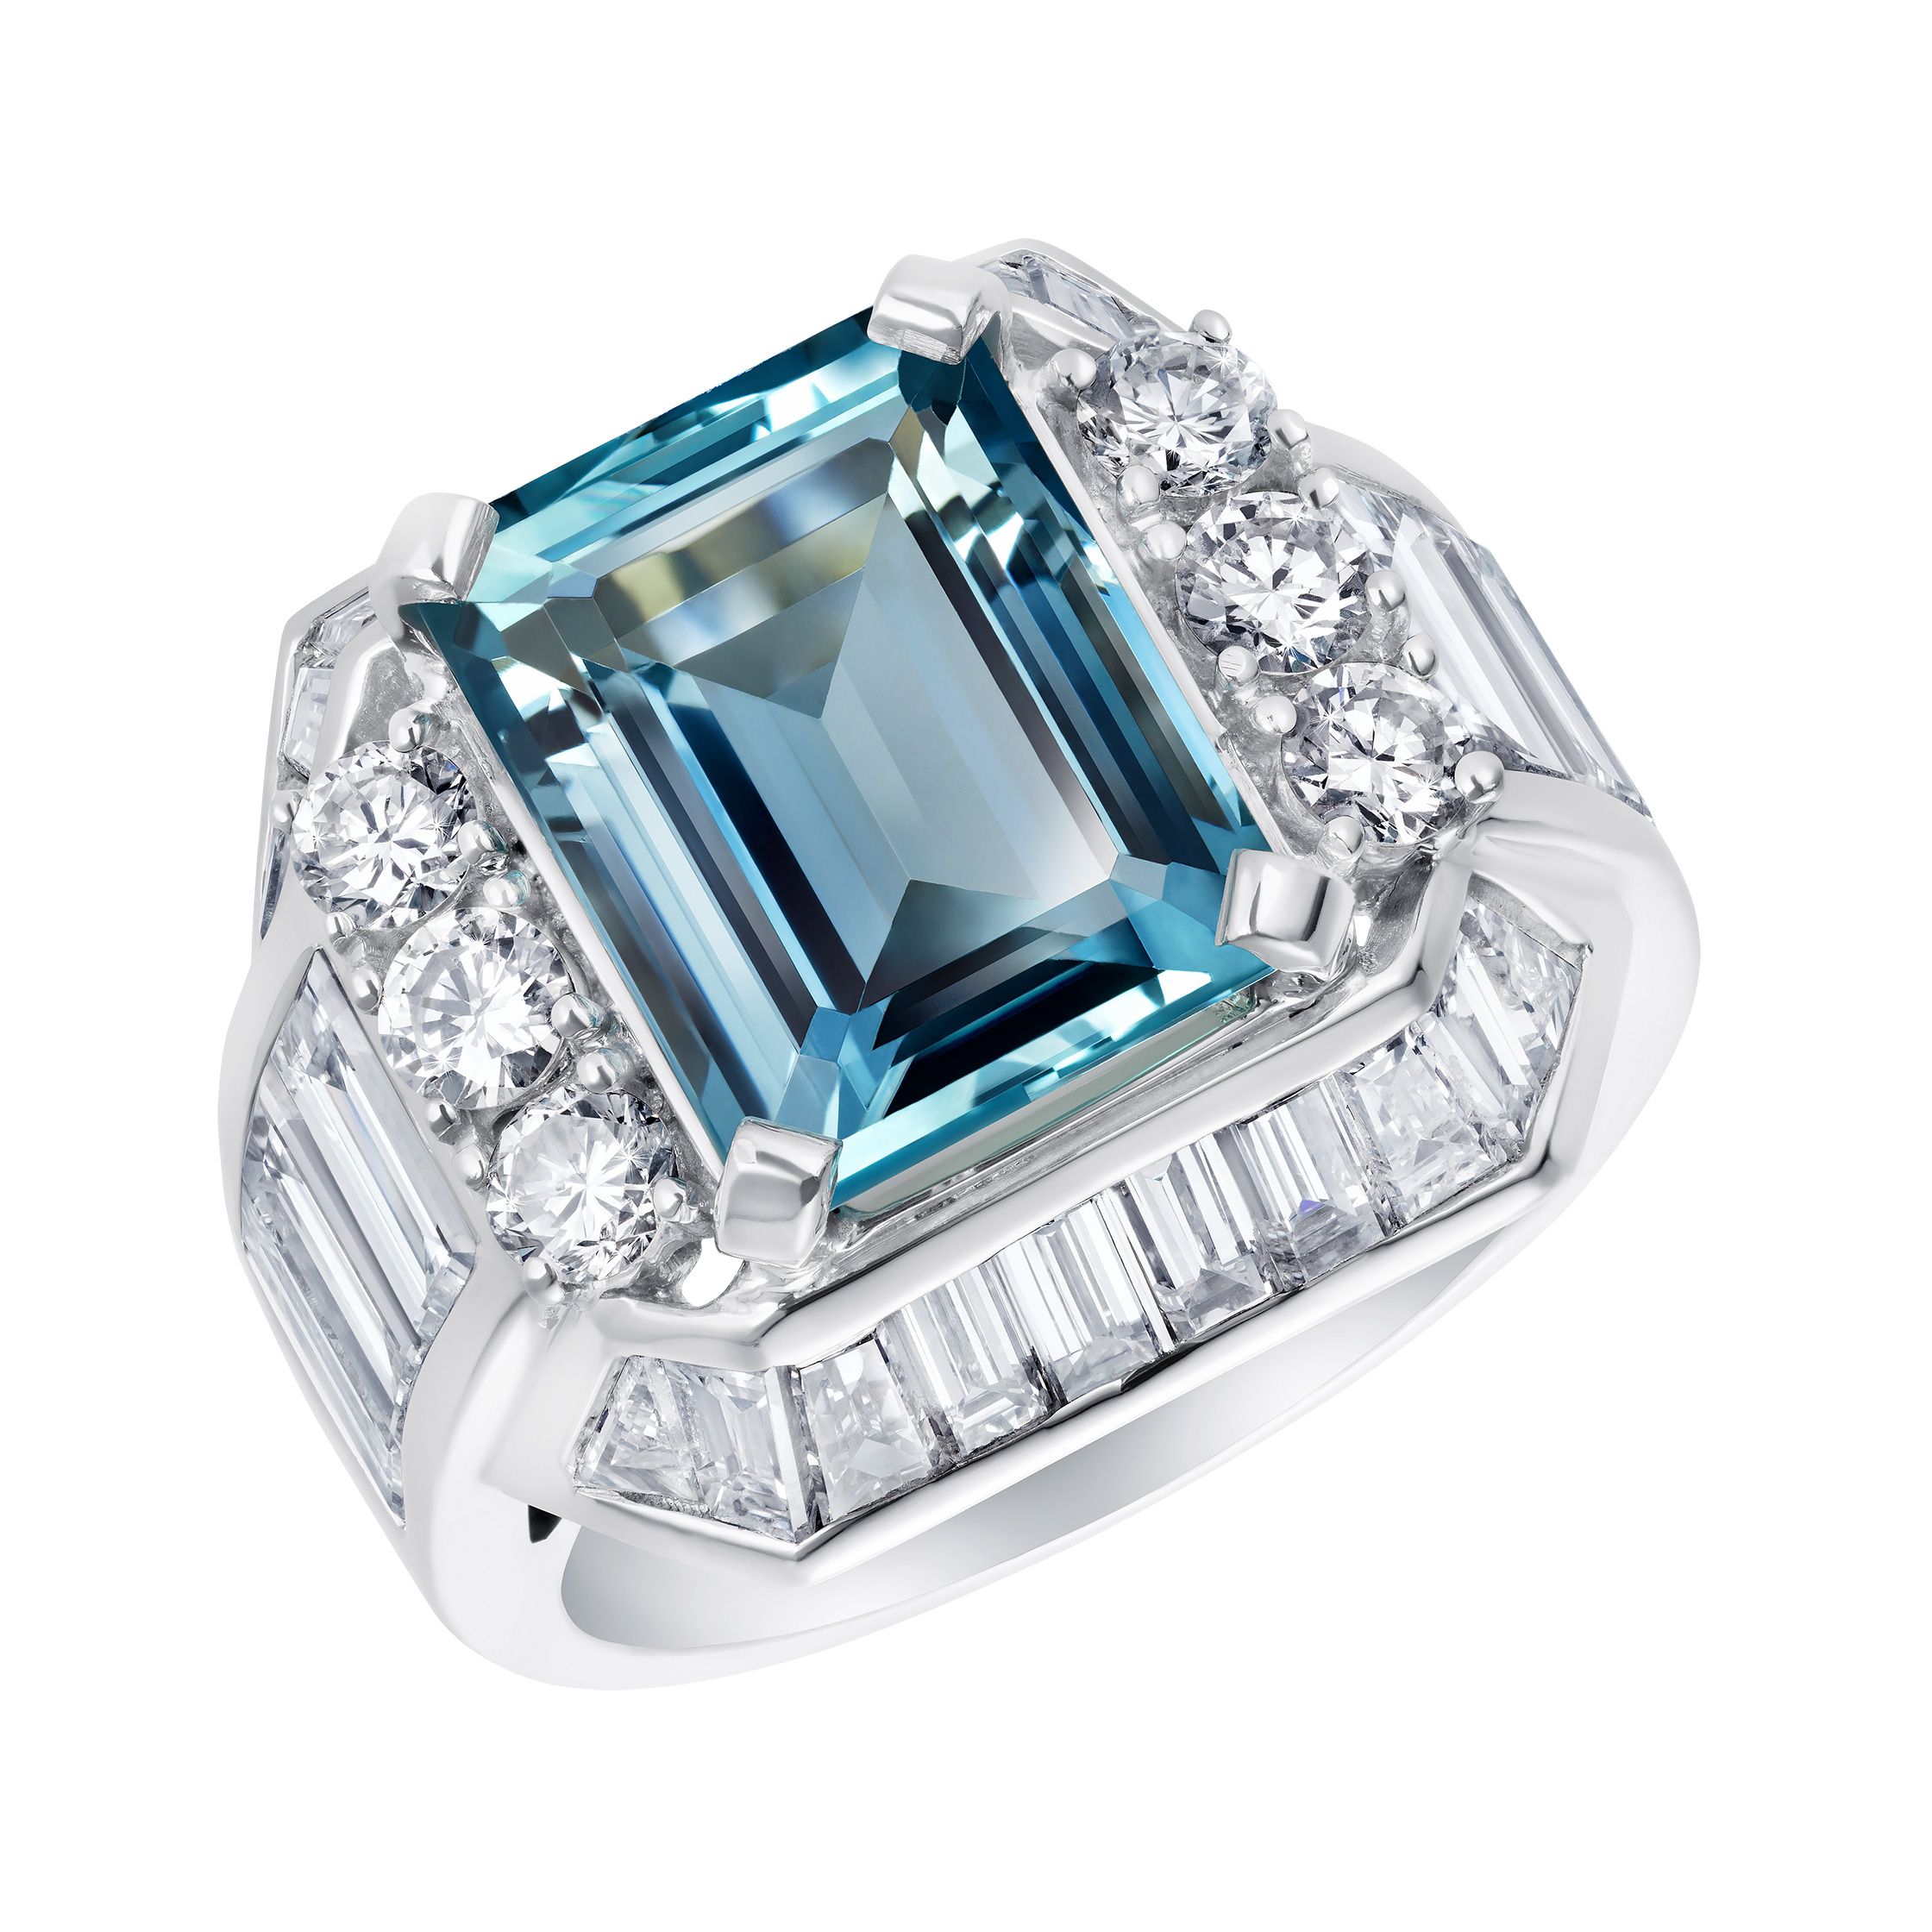 Aquamarine and Diamond Ring | 4.60 Carat Aquamarine Cocktail Ring